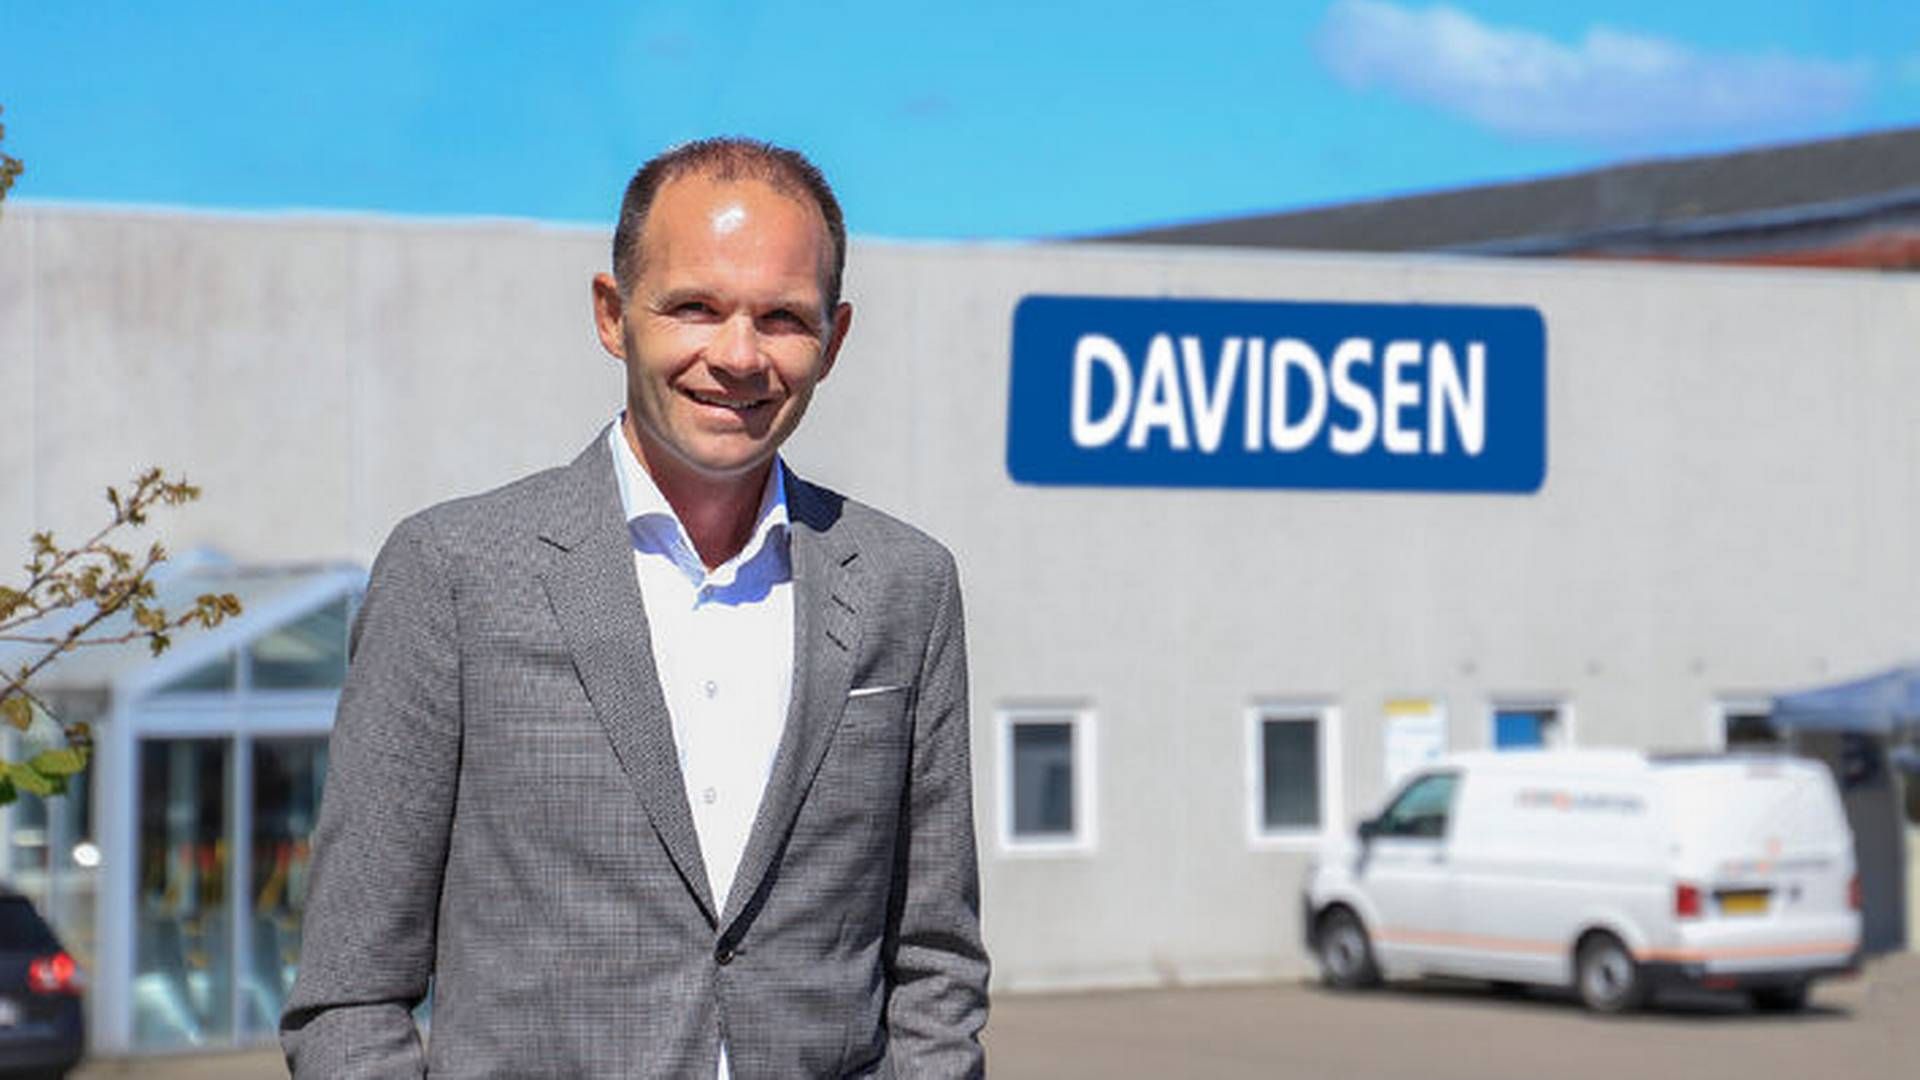 Henrik Clausen har været adm. direktør i Davidsens Tømmerhandel siden 2017. Davidsens Tømmerhandel har hovedkontor i Kolding og omkring 1000 ansatte. | Foto: Davidsen Tømmerhandel/pr